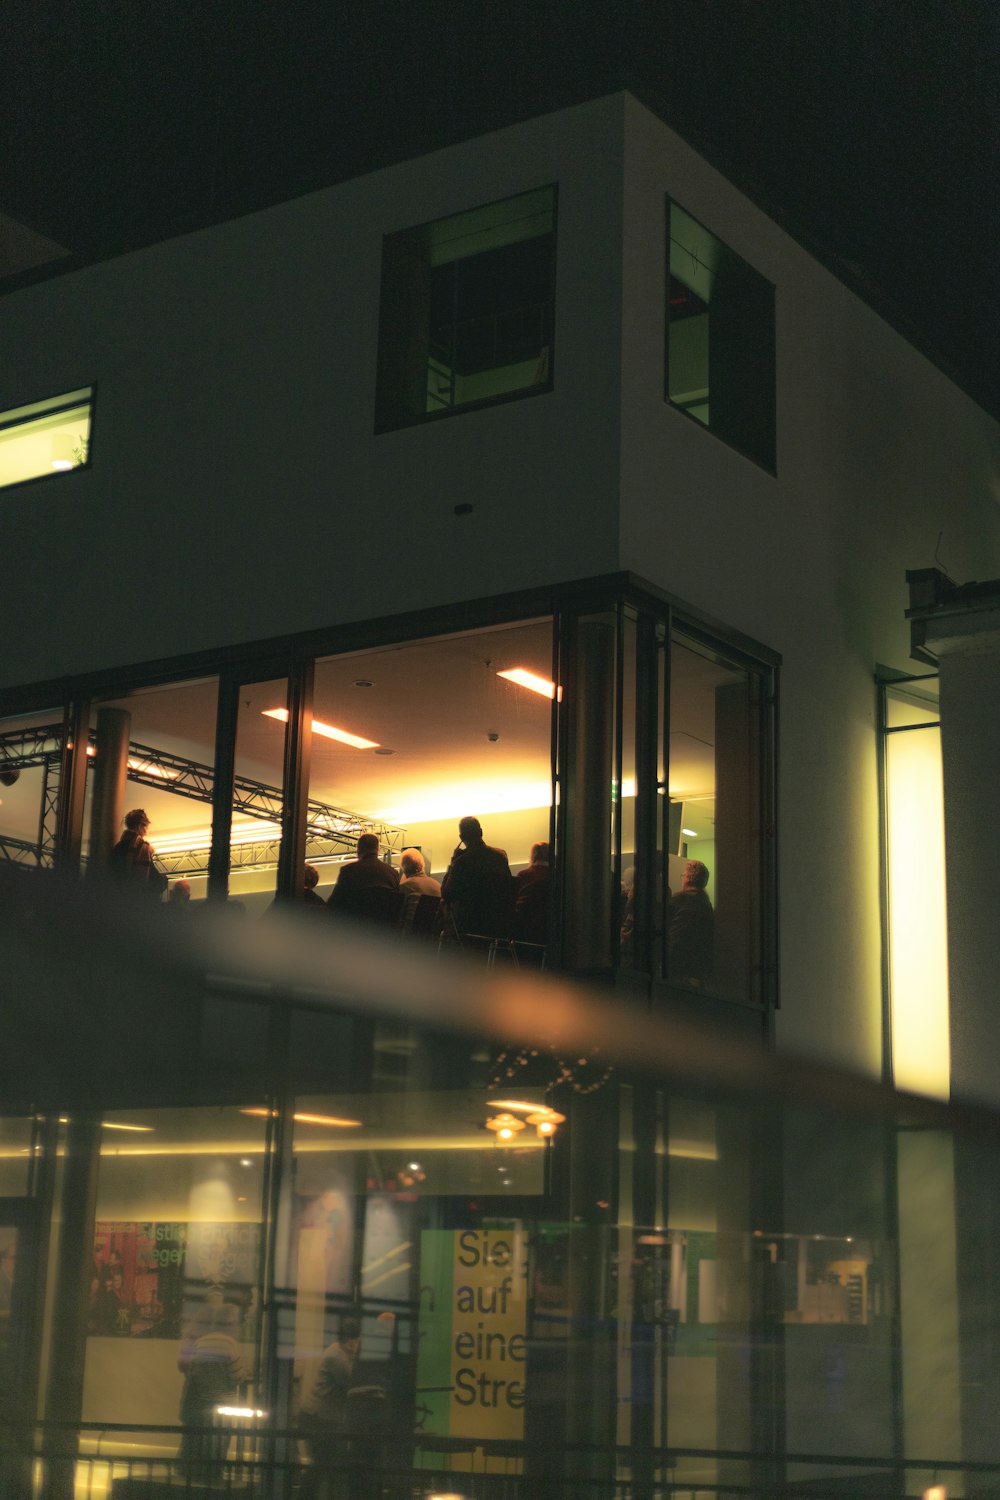 Un grupo de personas paradas afuera de un edificio por la noche